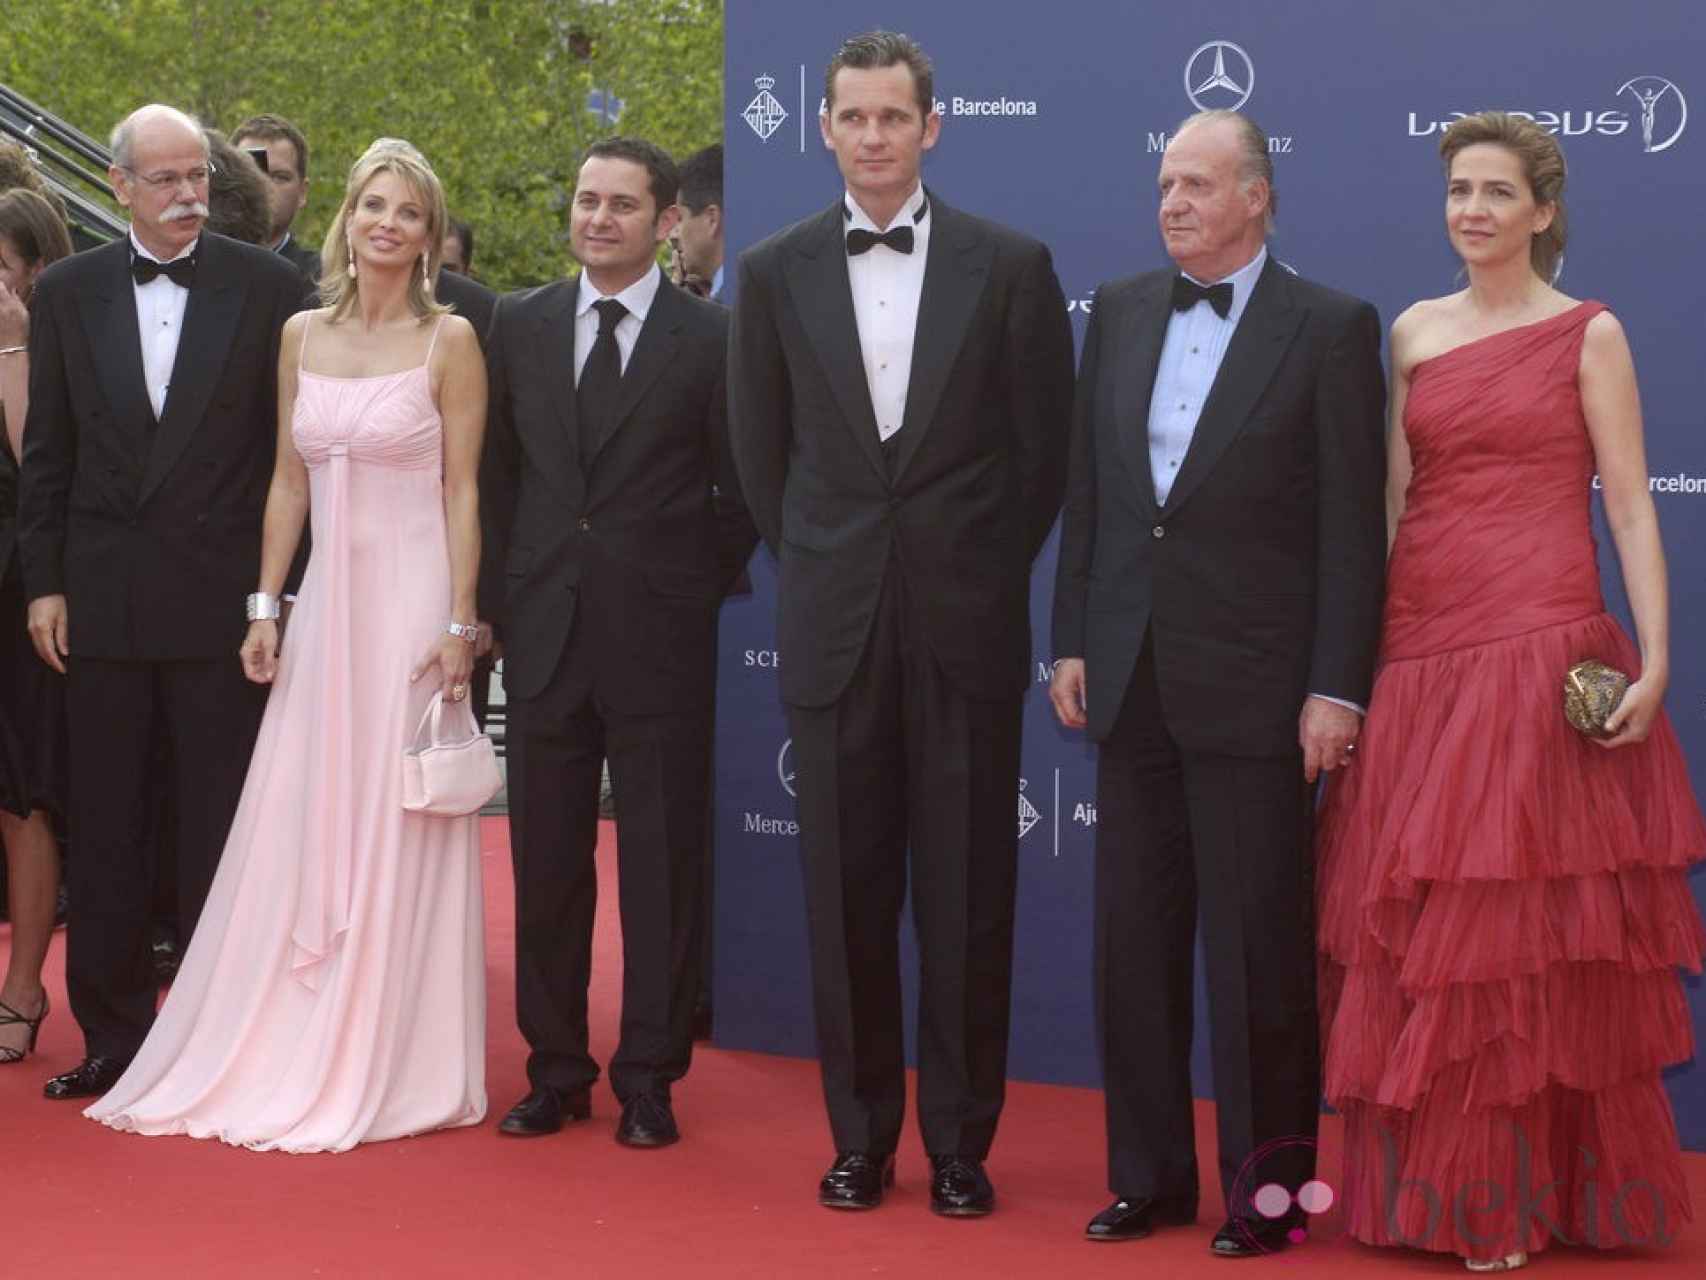 Corinna zu Sayn-Wittgenstein con el Rey Juan Carlos I, la Infanta Cristina e Iñaki Urdangarin.